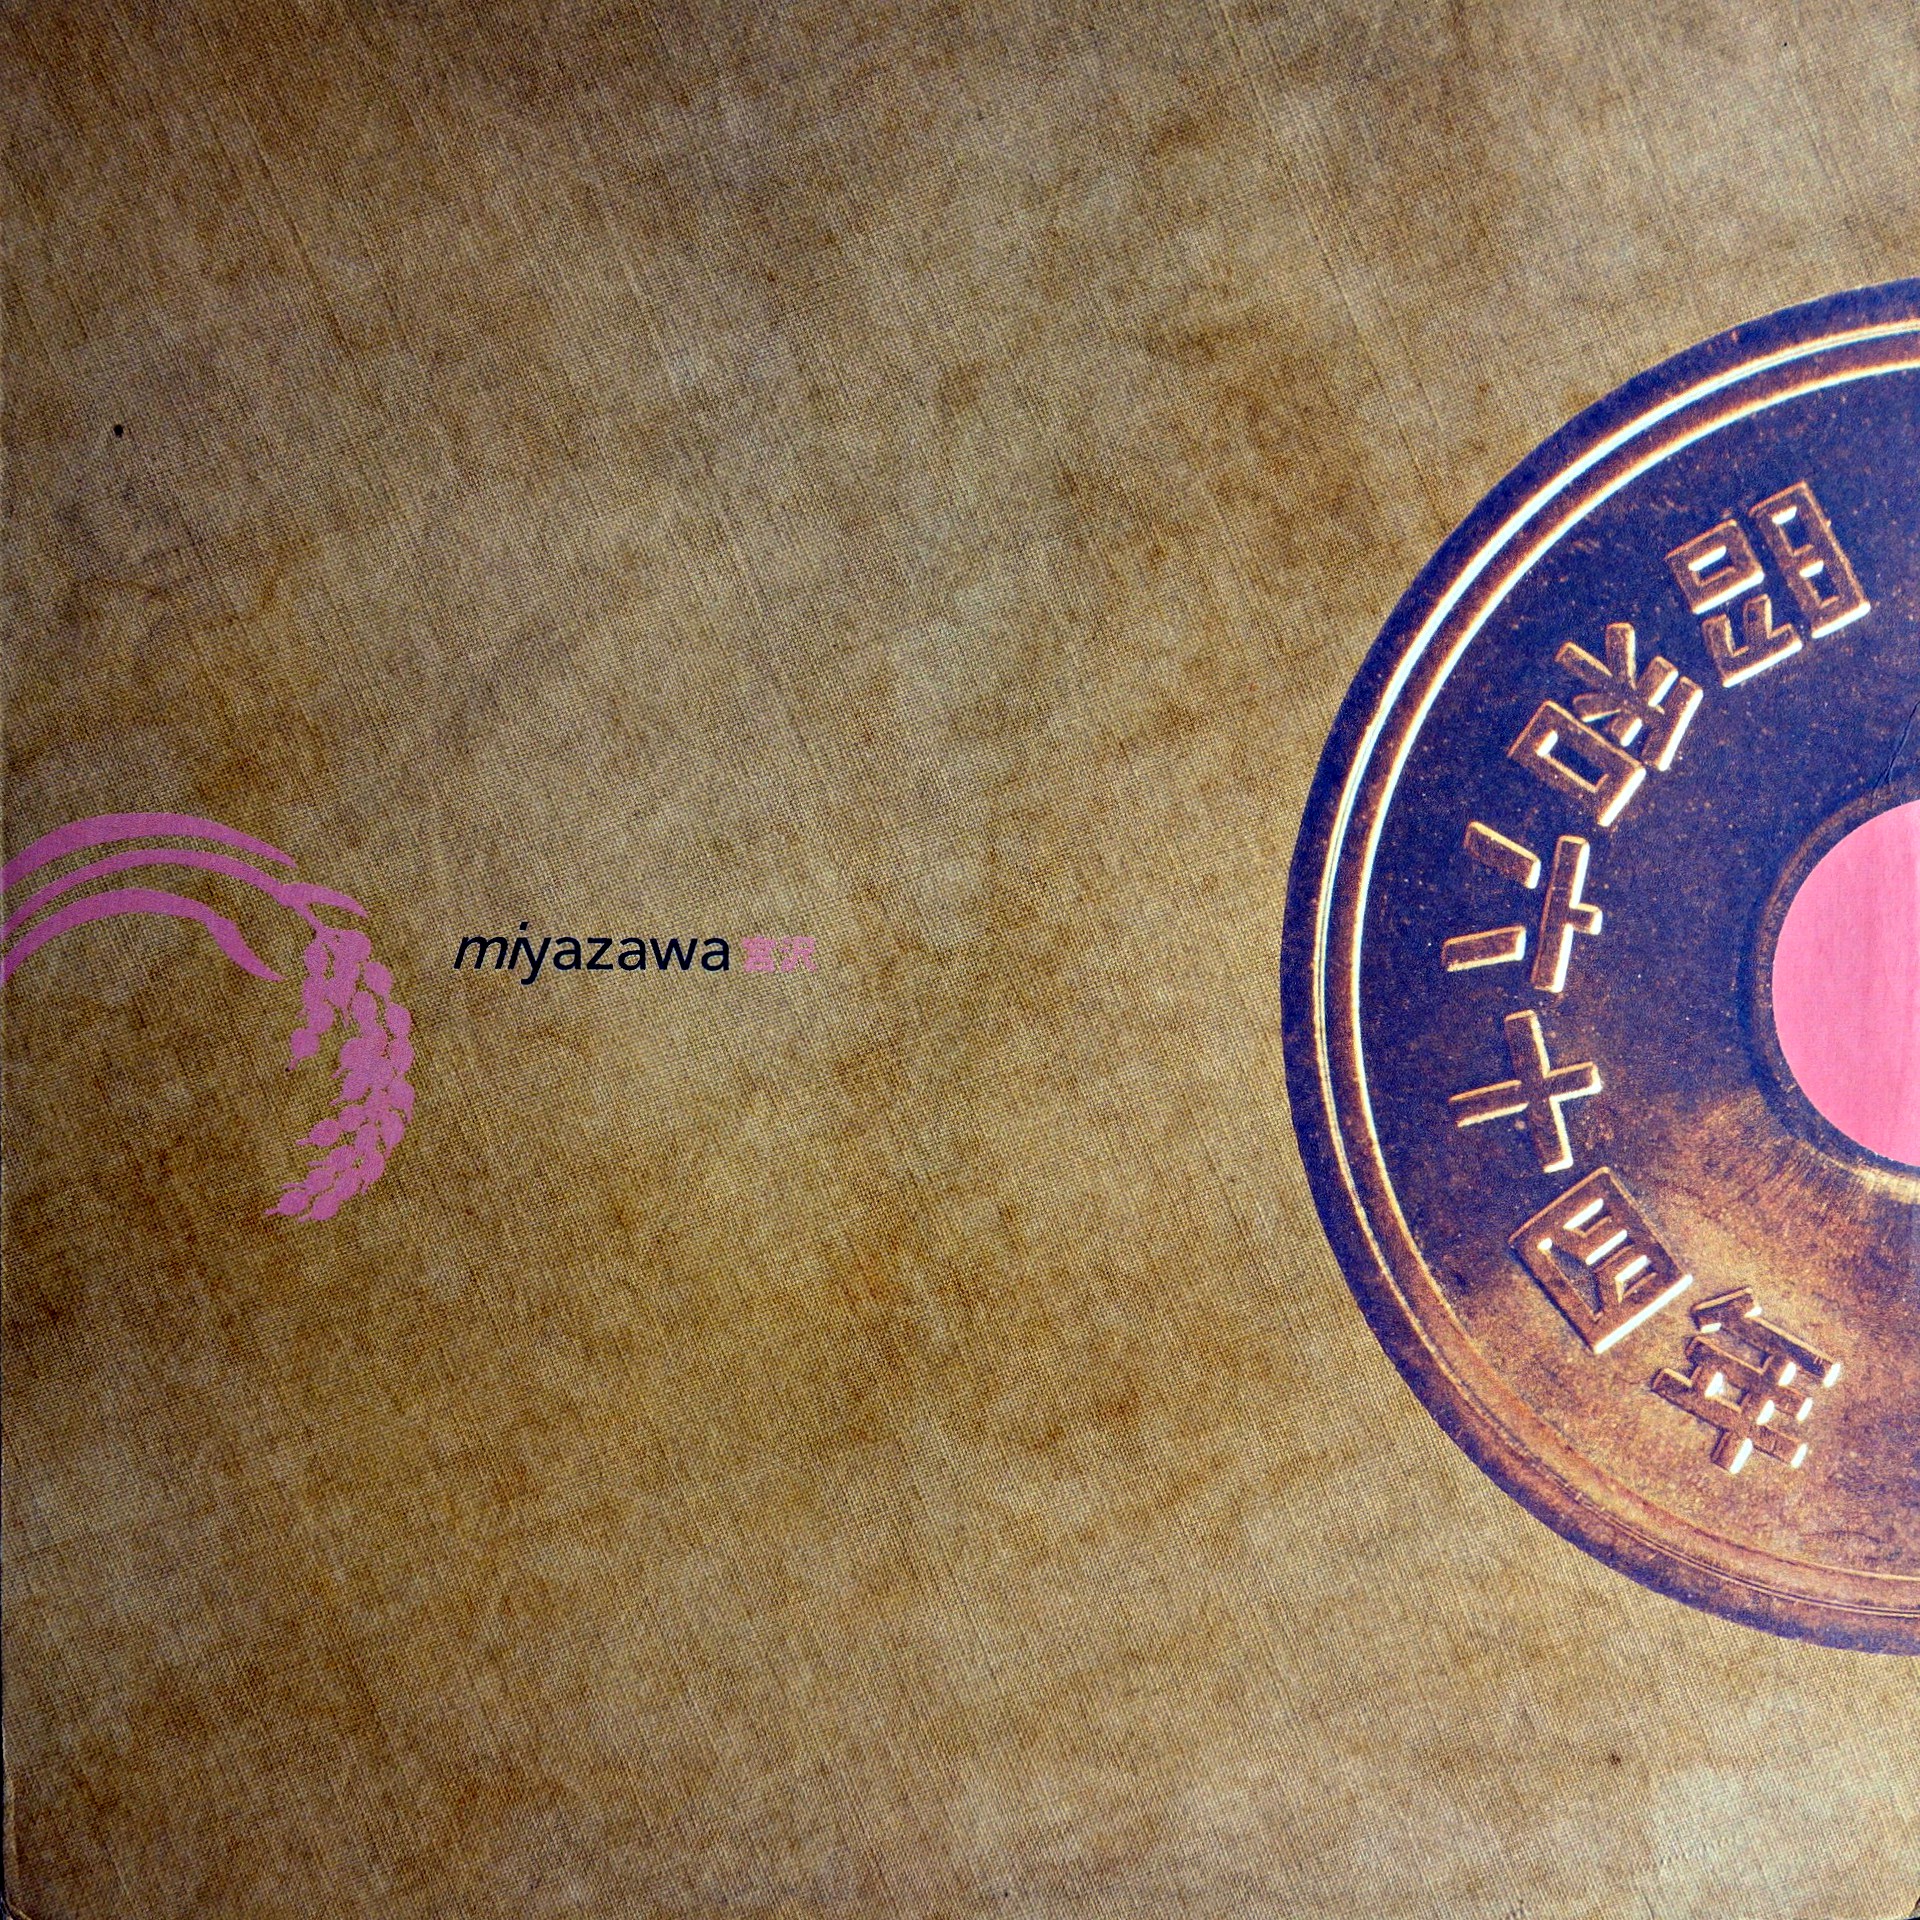 12" Miyazawa ‎– The Afrosick EP